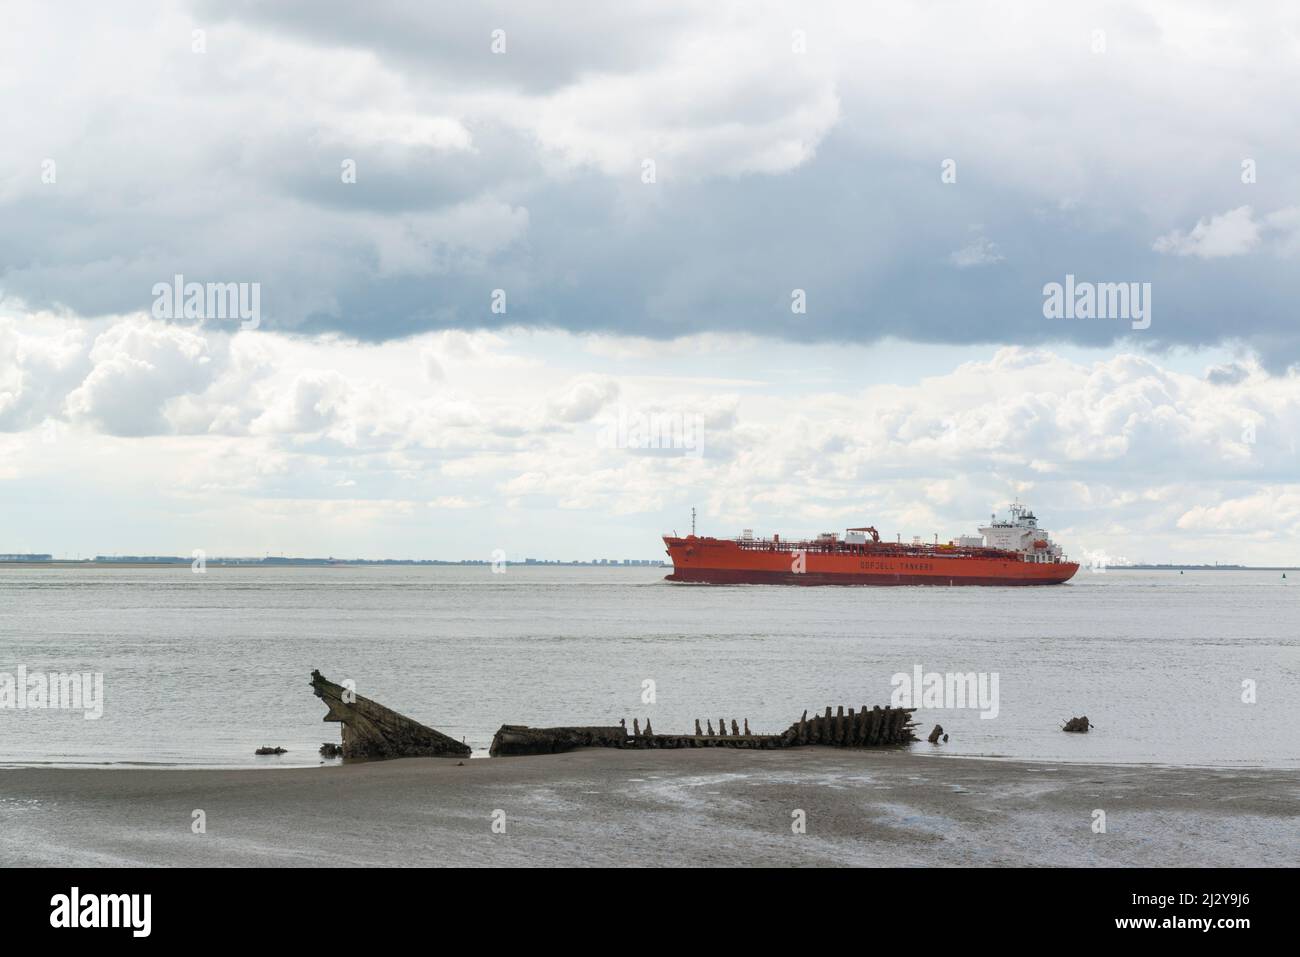 Tanker Bow Ingeniero de Odfjell Shipping En su camino al puerto de Amberes pasa un naufragio de madera en las marismas cerca de Hansweert, Zeeland, Países Bajos Foto de stock